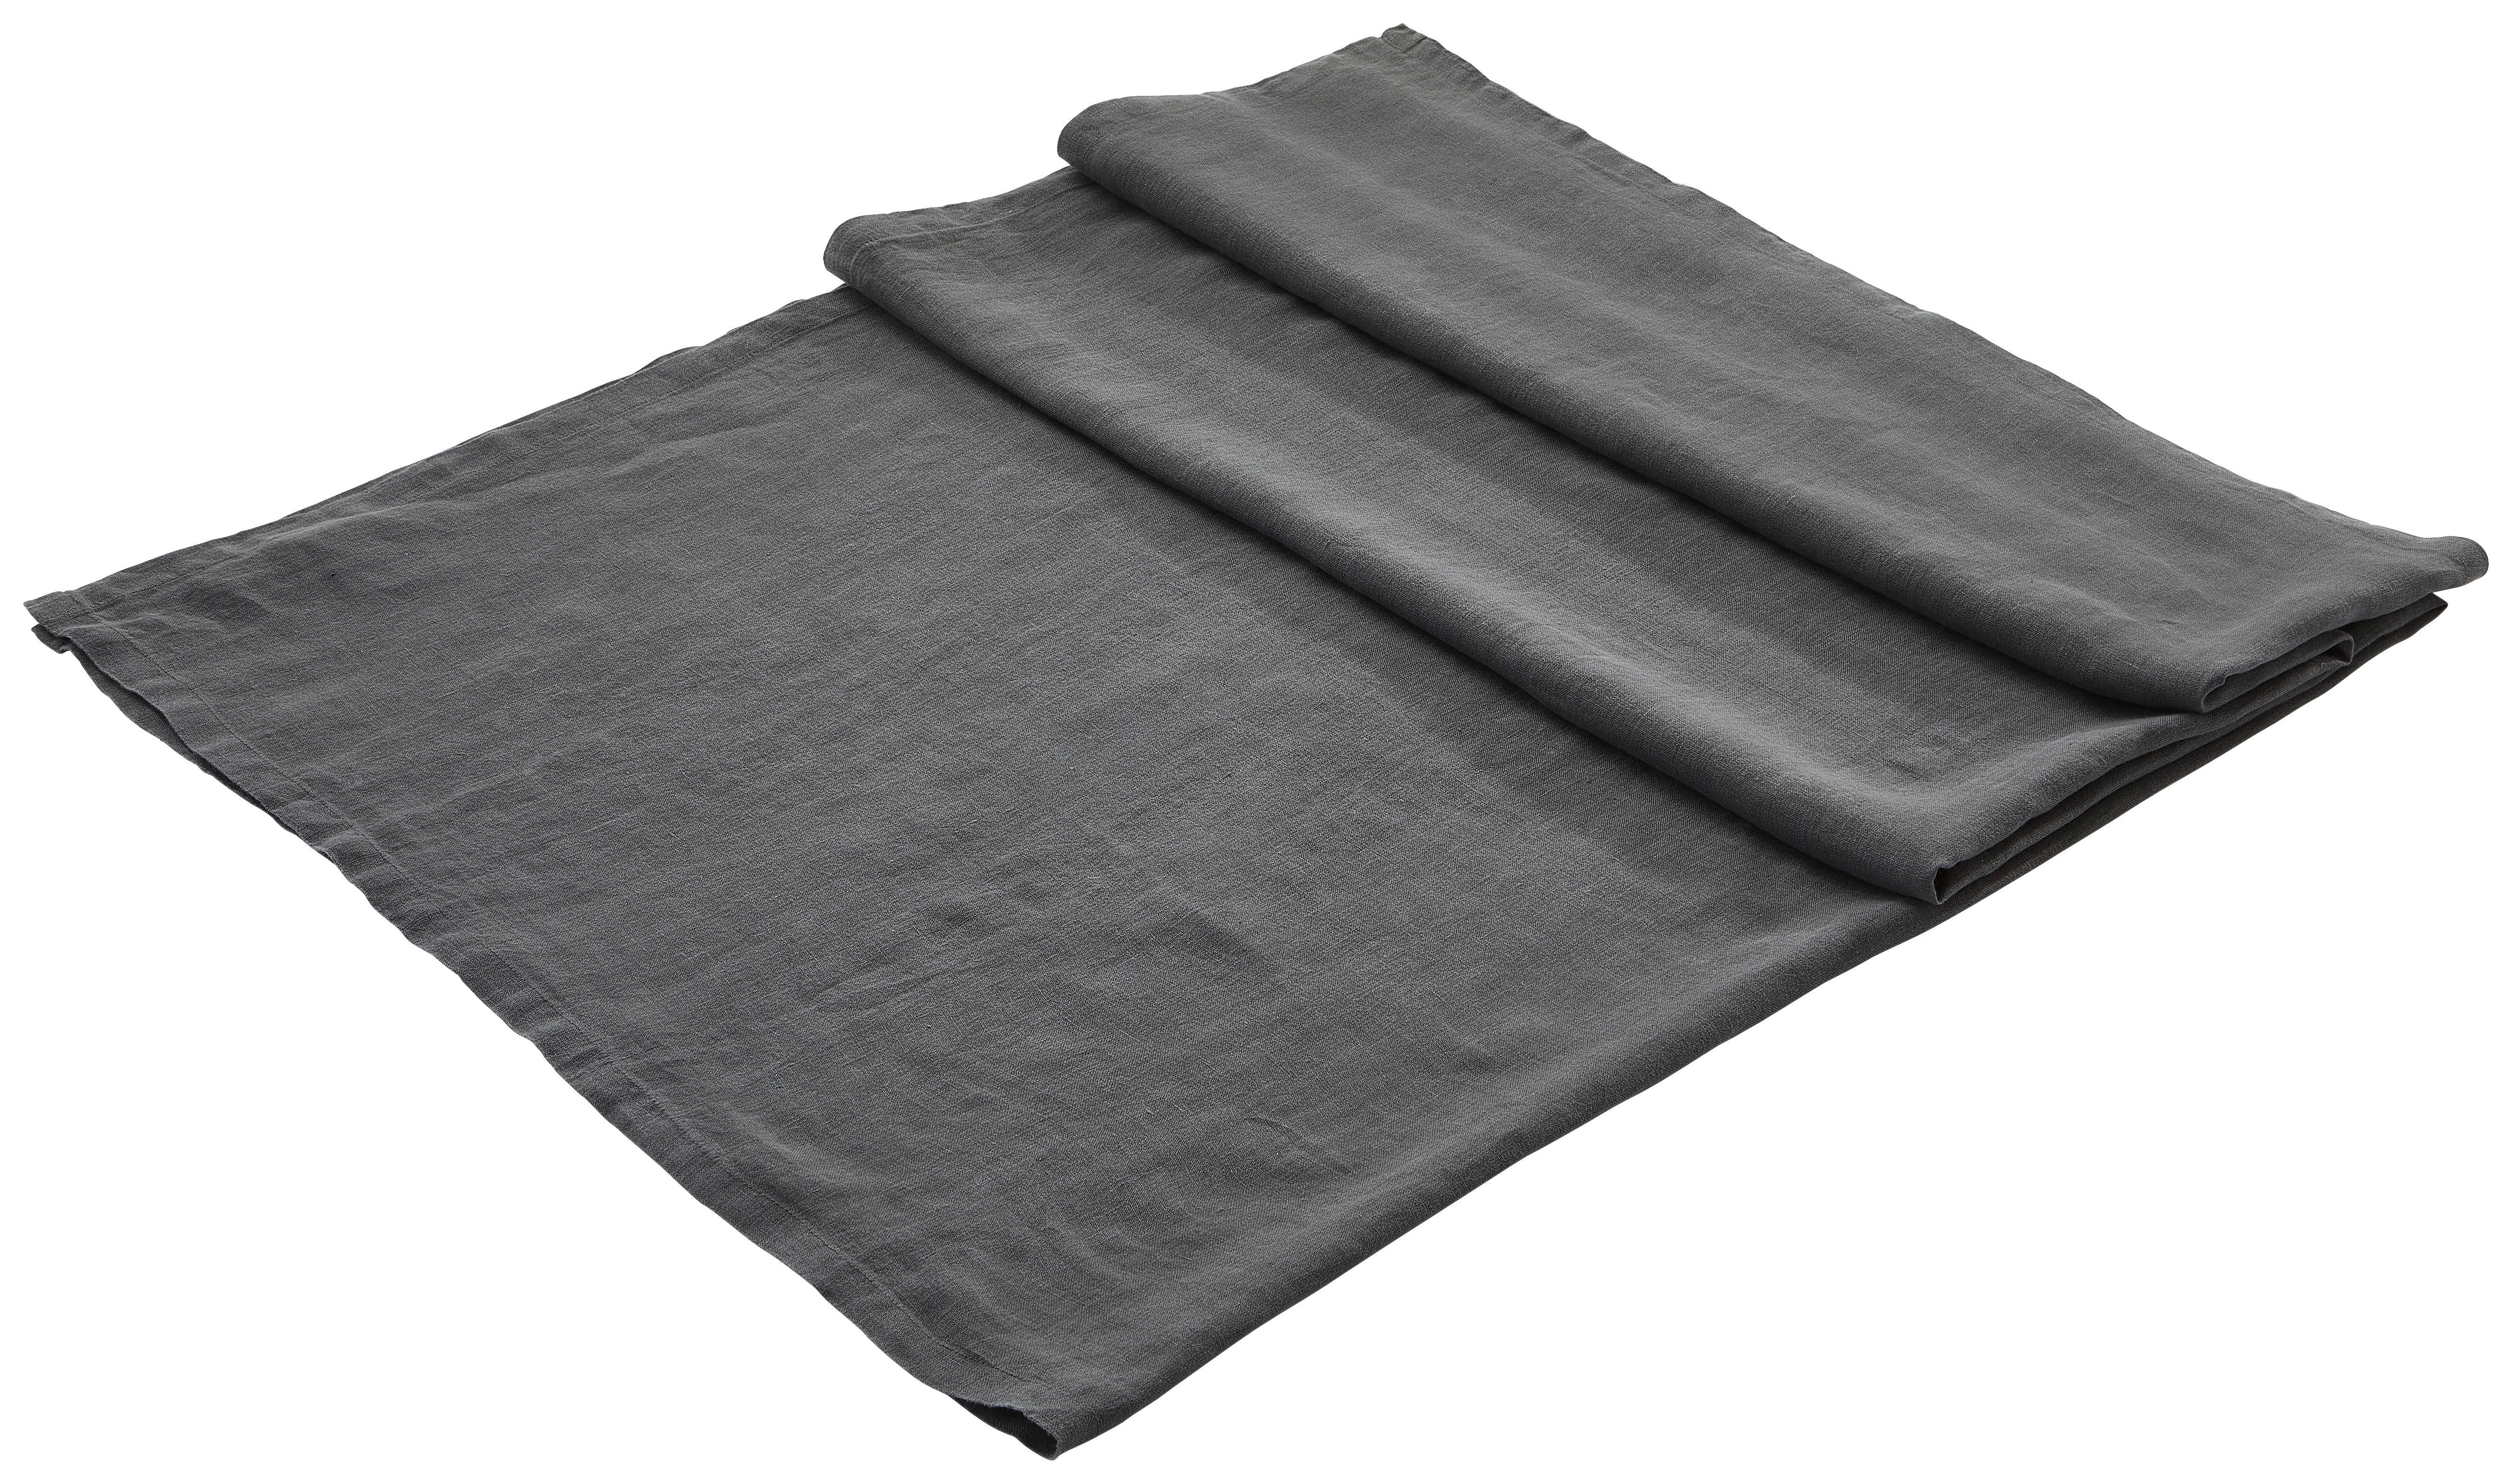 TISCHDECKE Textil Leinenoptik 140/180 cm  - Weiß, Trend, Textil (140/180cm) - Ambiente